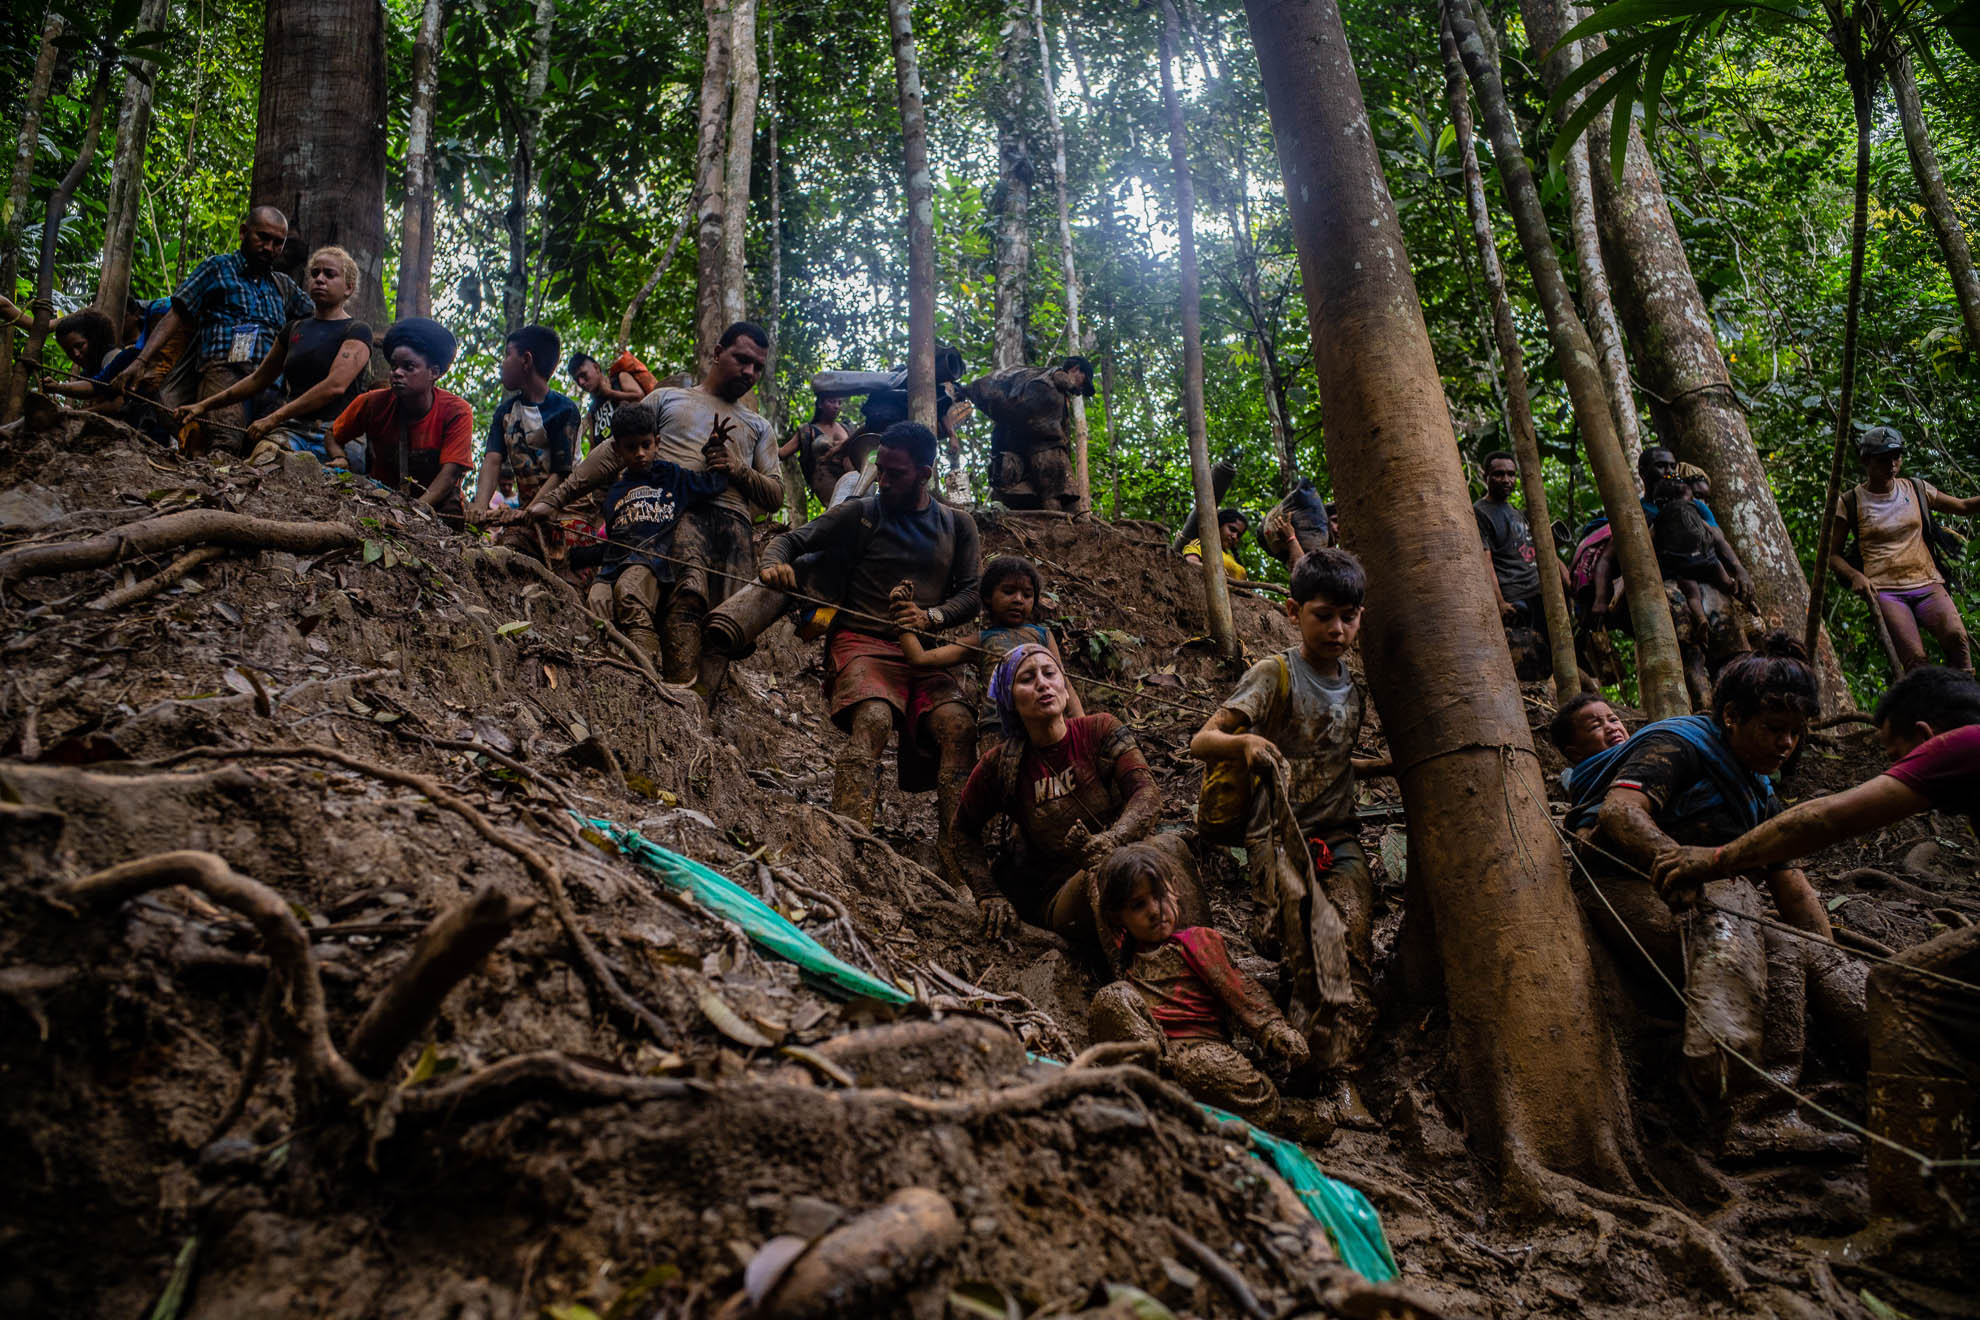 Este año, una cifra sin precedentes de 200.000 personas han cruzado la escarpada selva entre Sudamérica y Centroamérica conocida como El Tapón del Darién, casi veinte veces el promedio de hace unos años. La gran mayoría son venezolanos. Septiembre de 2022.